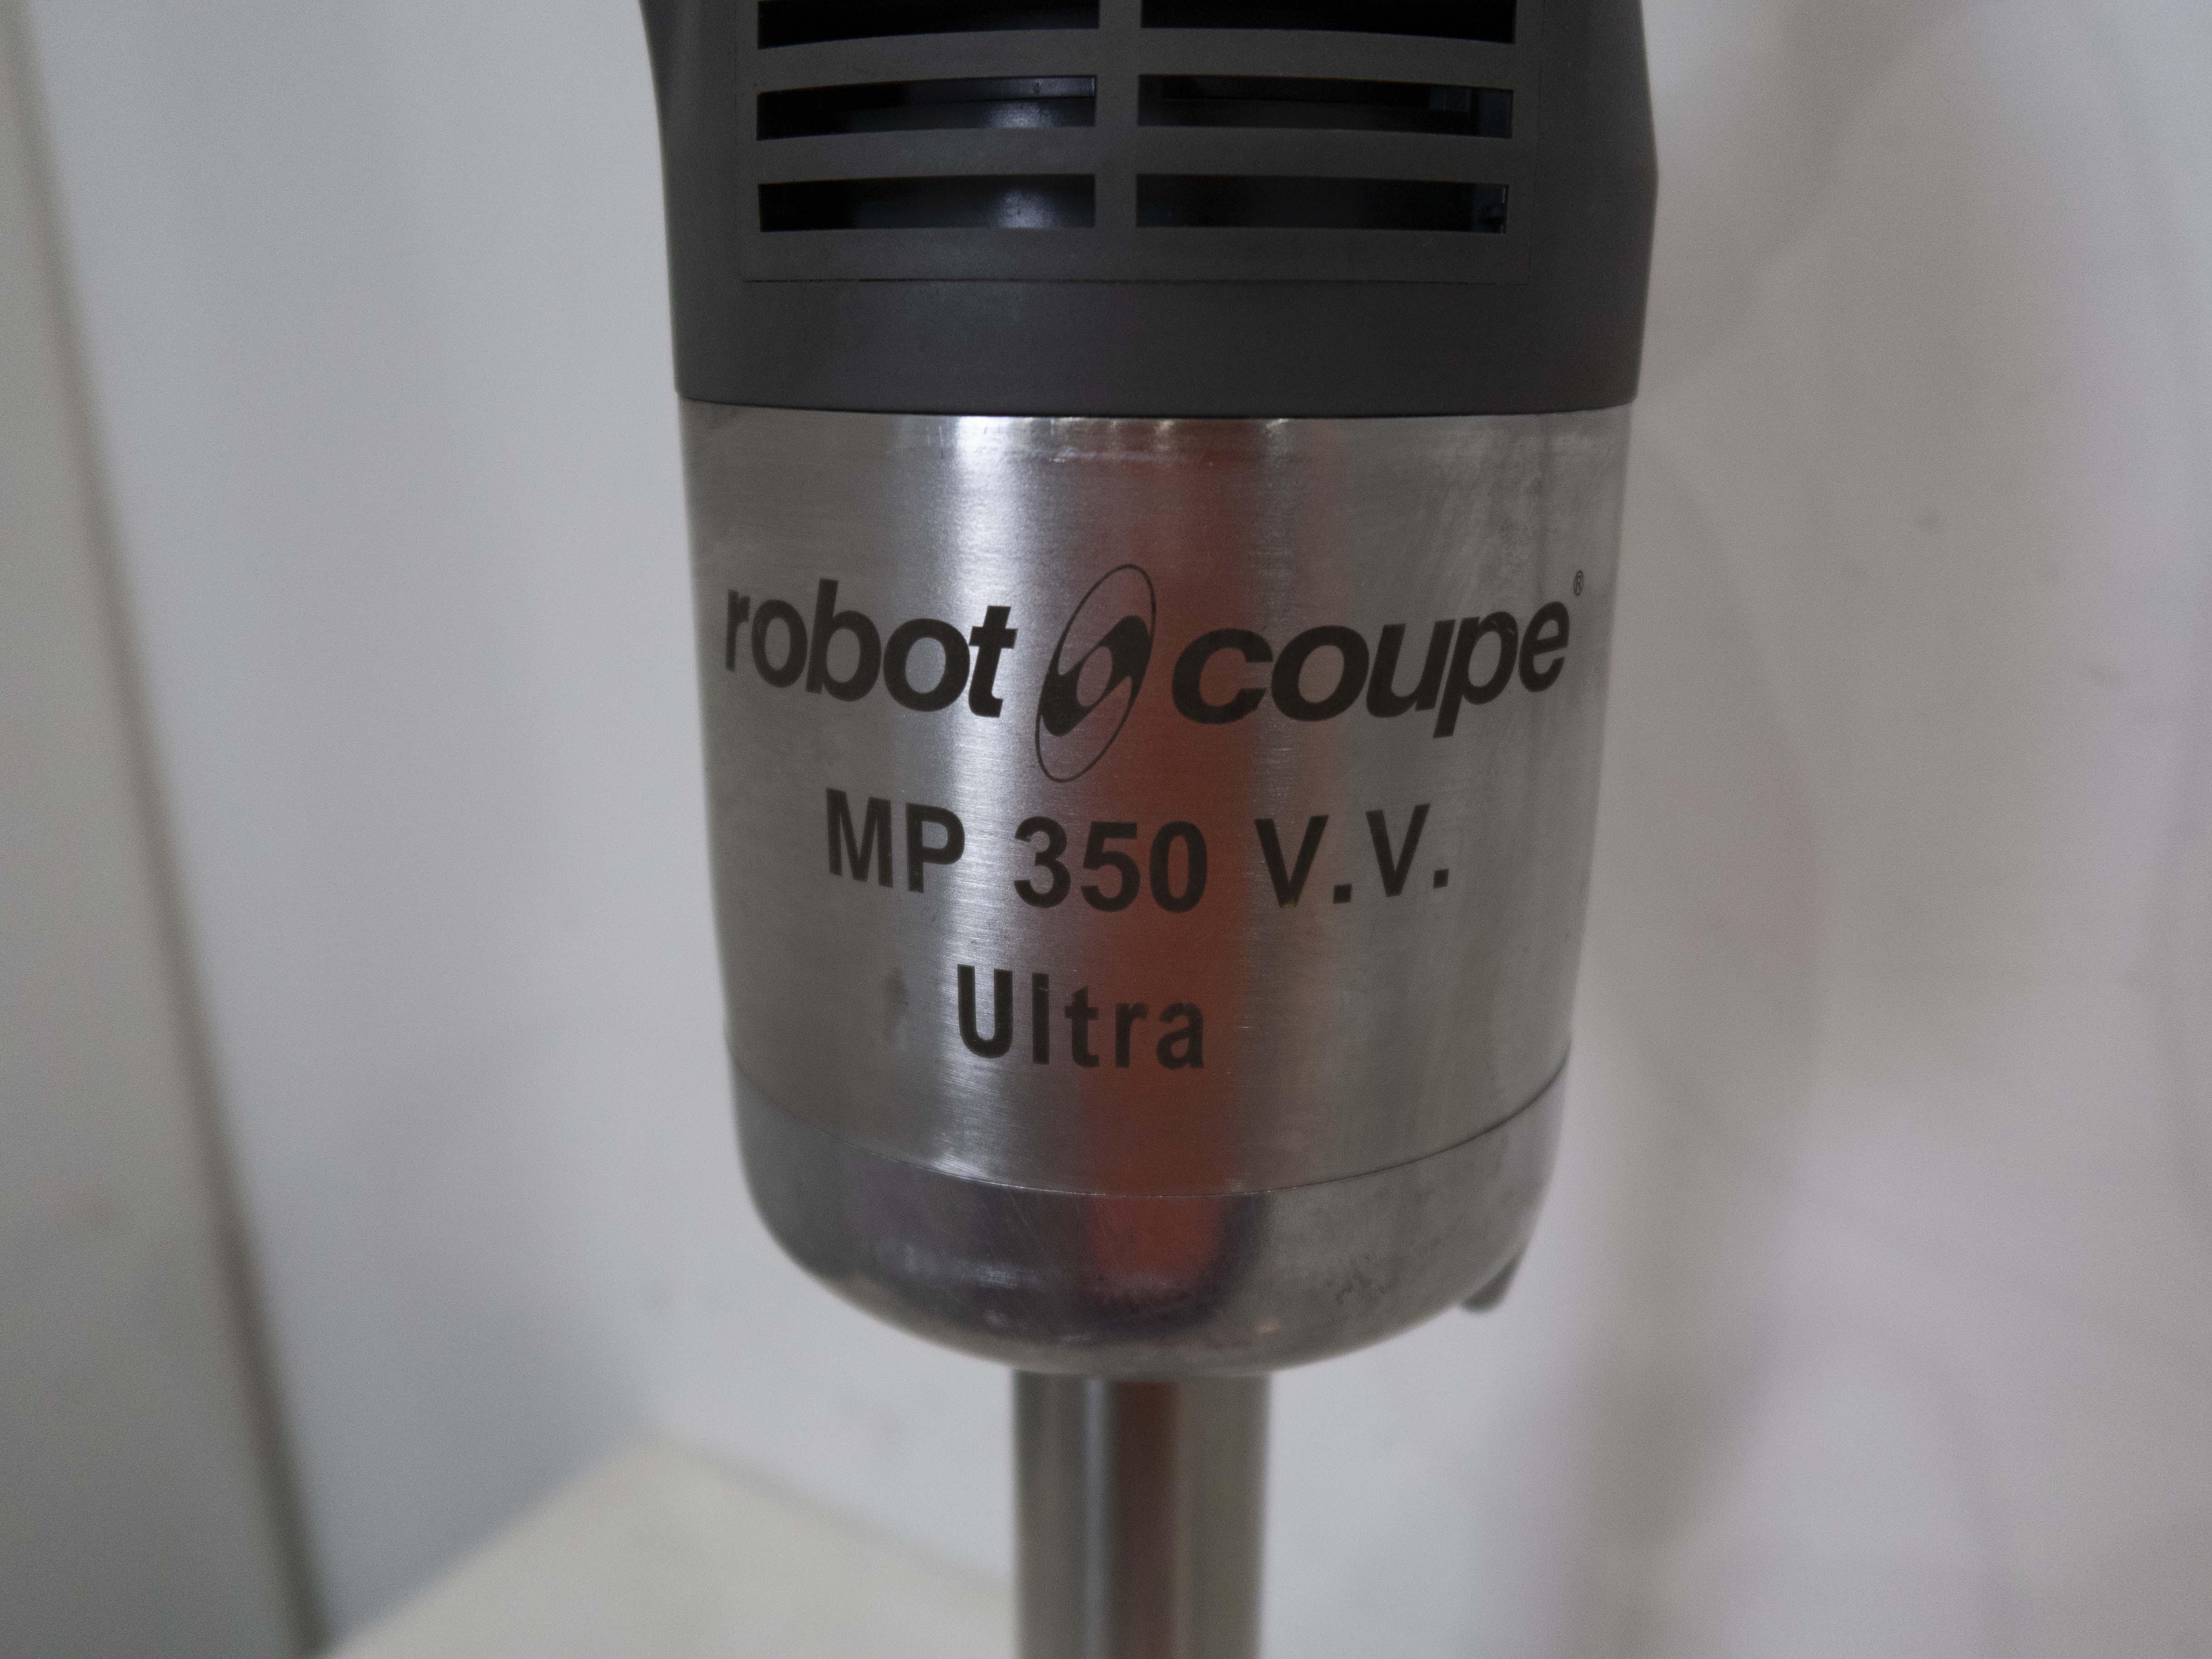 Thumbnail - Robot Coupe MP 350 V.V. Ultra Stick Blender